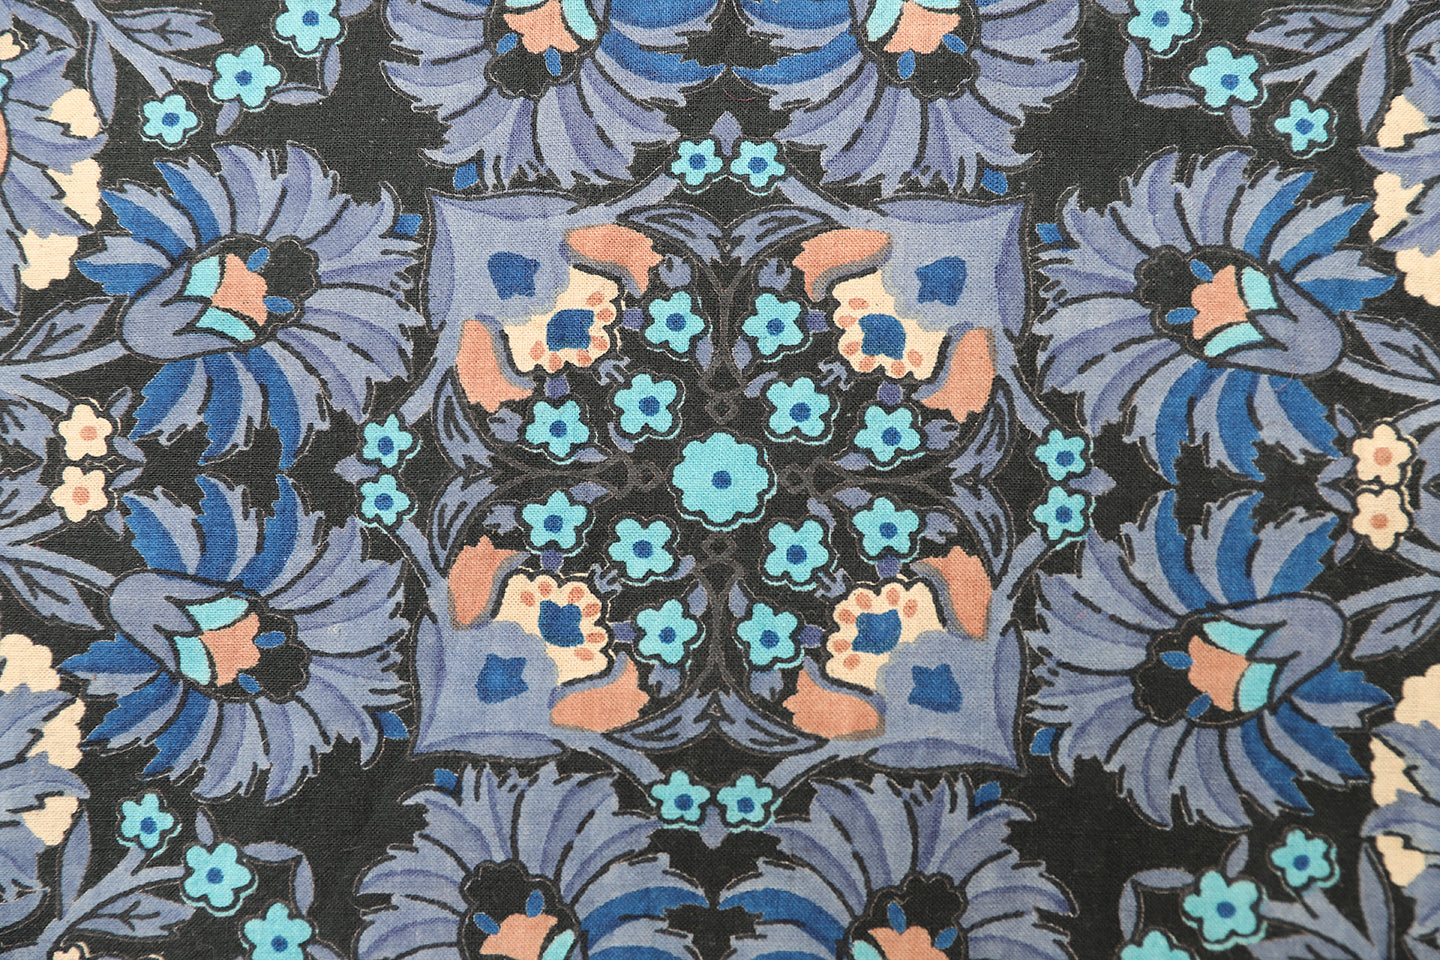 1'x1' Machine Woven Blue Floral Pillowcase